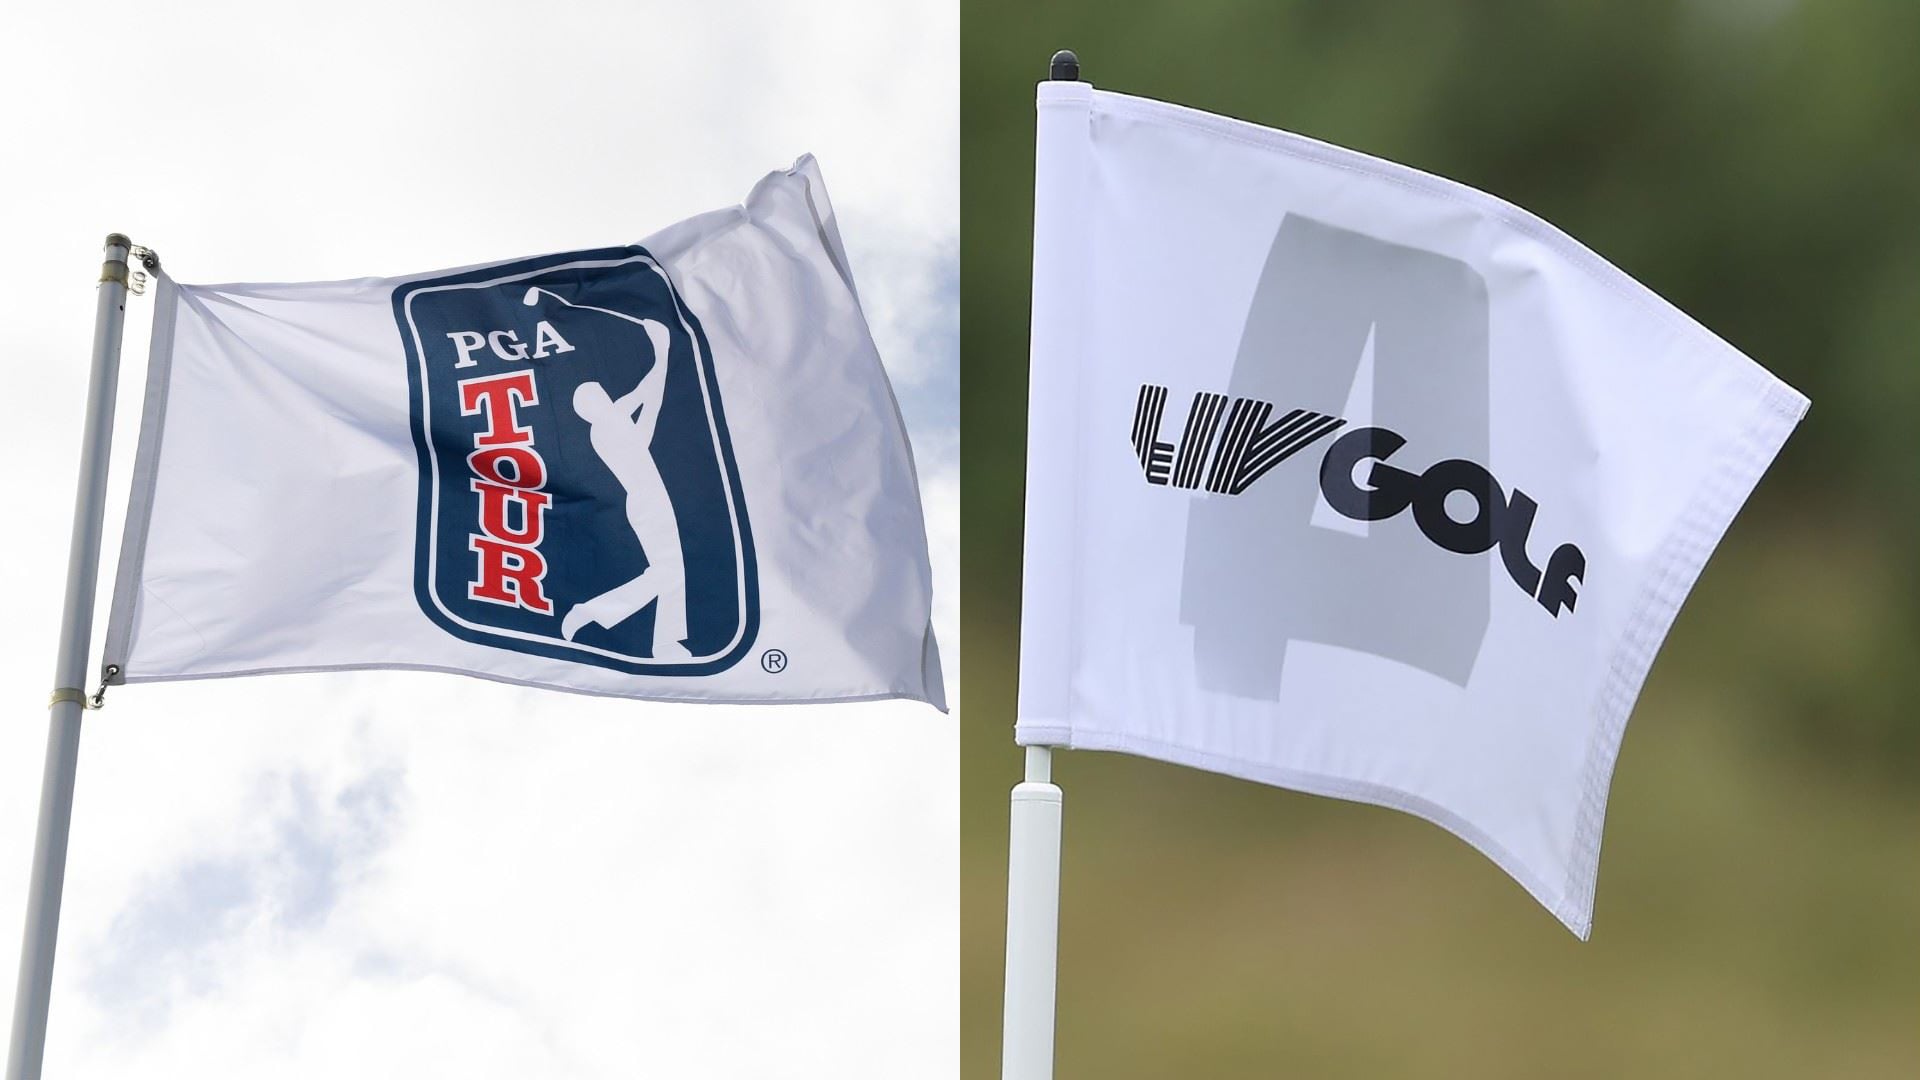 Legal wrangling continues in PGA Tour-LIV antitrust case despite settlement